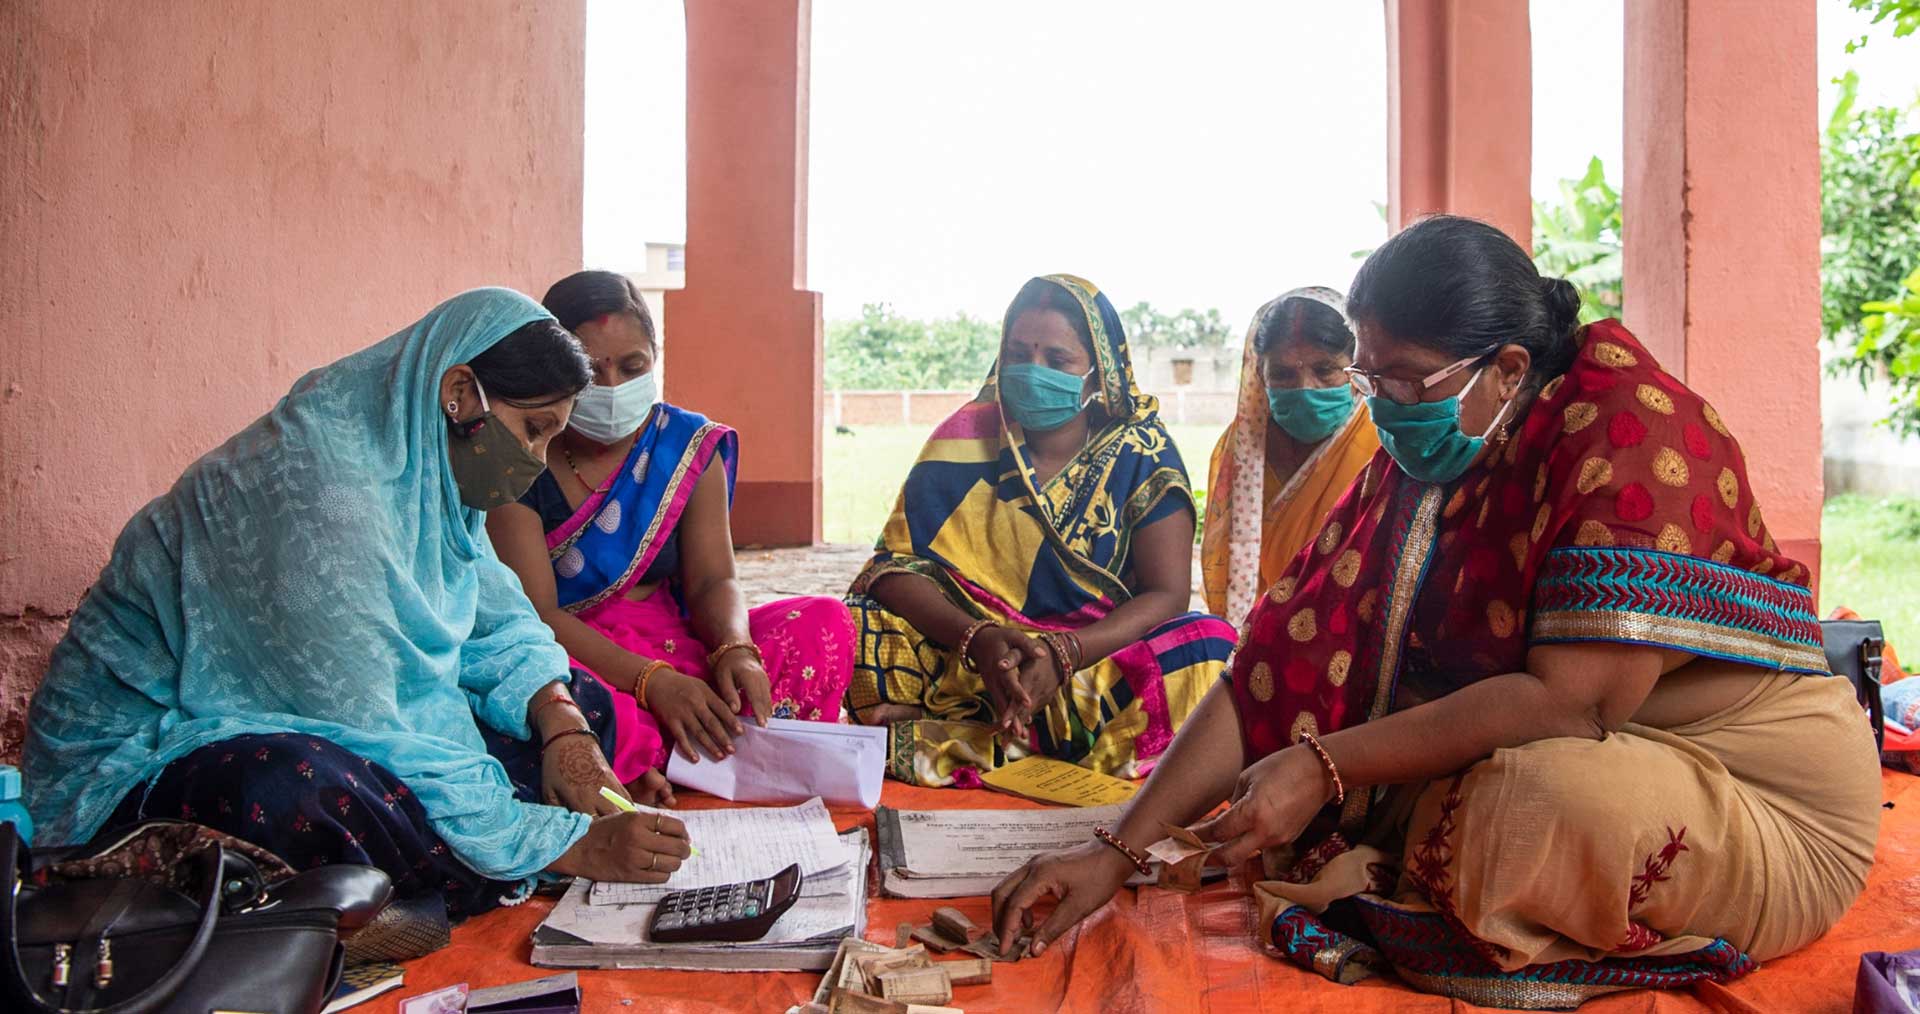 Сони Шарма (в синем), мобилизатор сообщества и «диди» или член группы самопомощи, организованной Дживикой, записывает денежные депозиты во время встречи ГСП в Гурмии, Бихар, Индия. (28 августа 2021 г.)